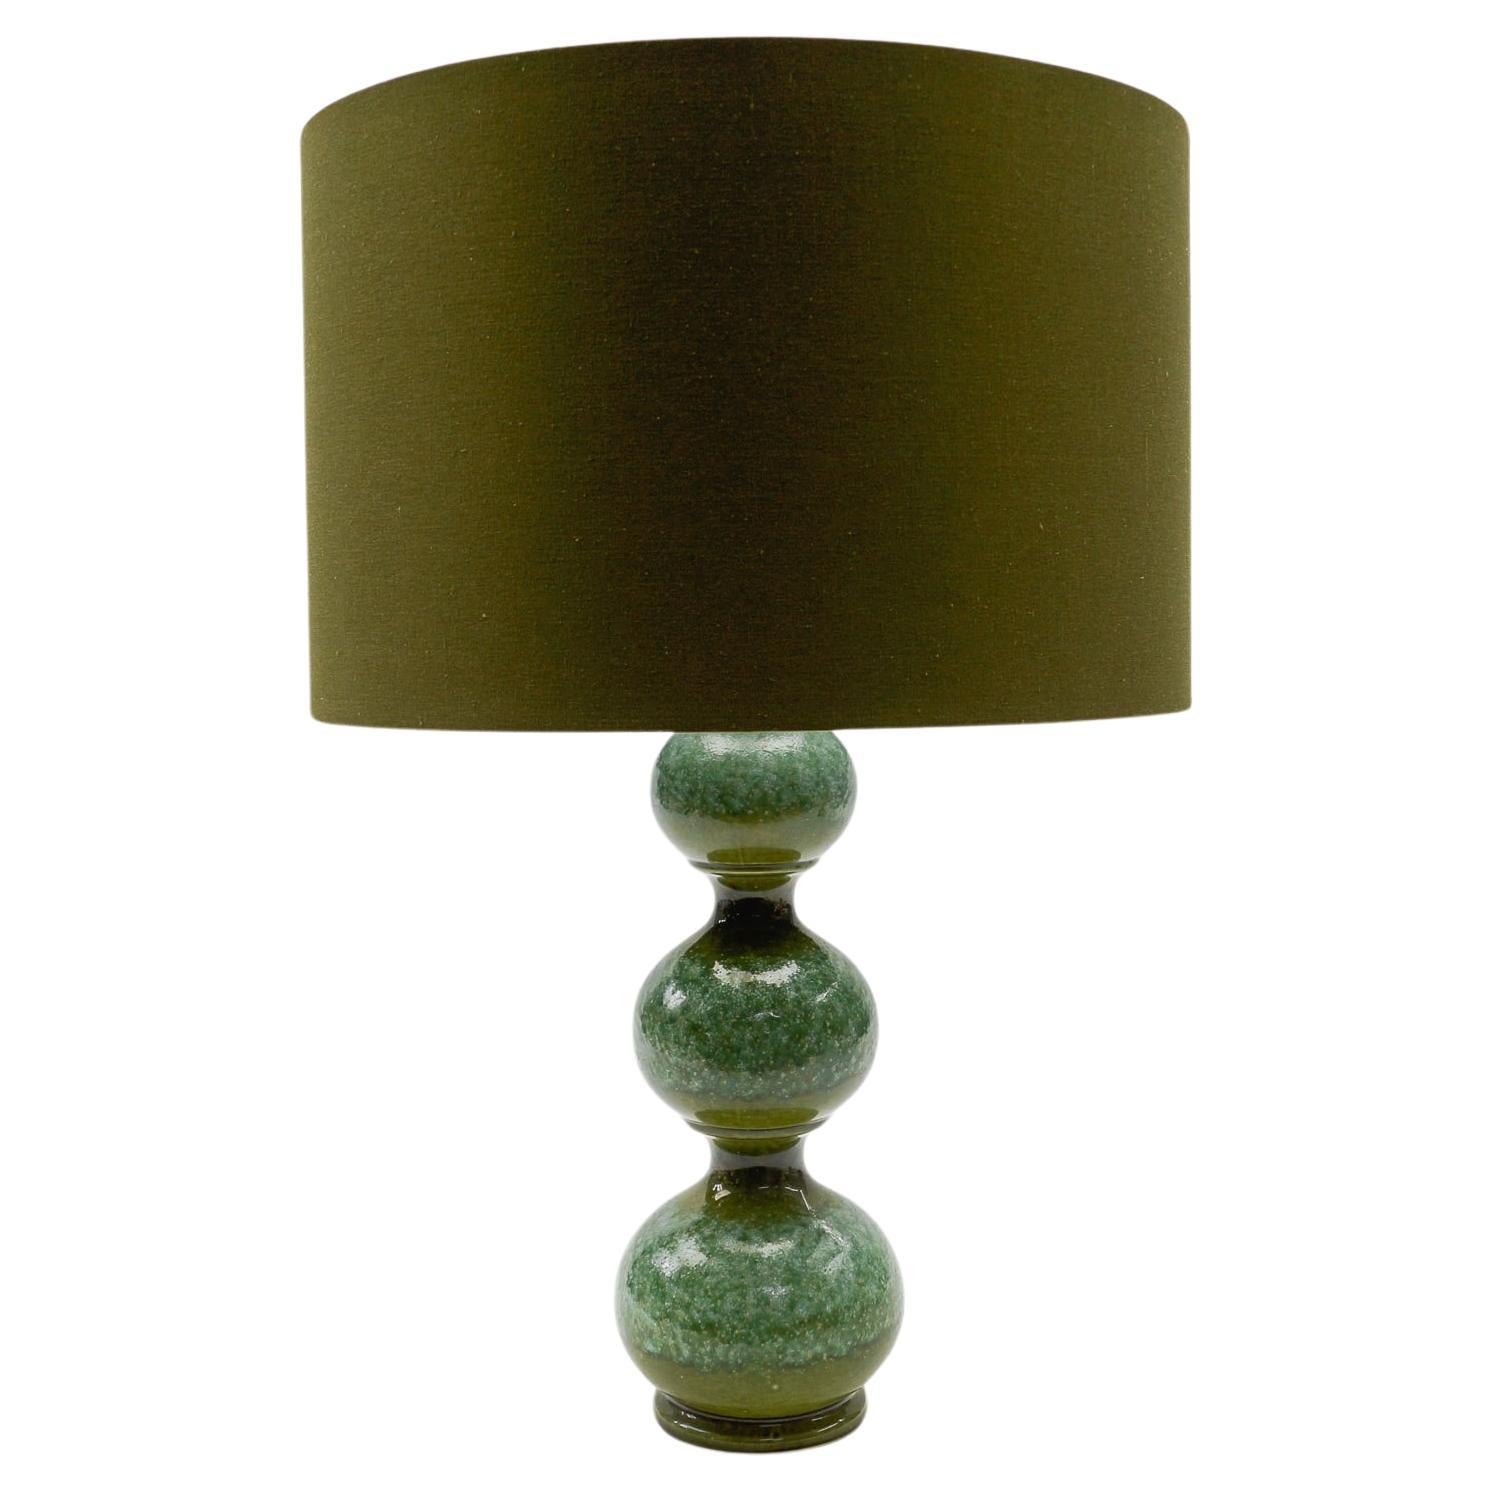 Very Rare Green Ceramic Table Lamp Base from Kaiser Leuchten, Germany 1960s -